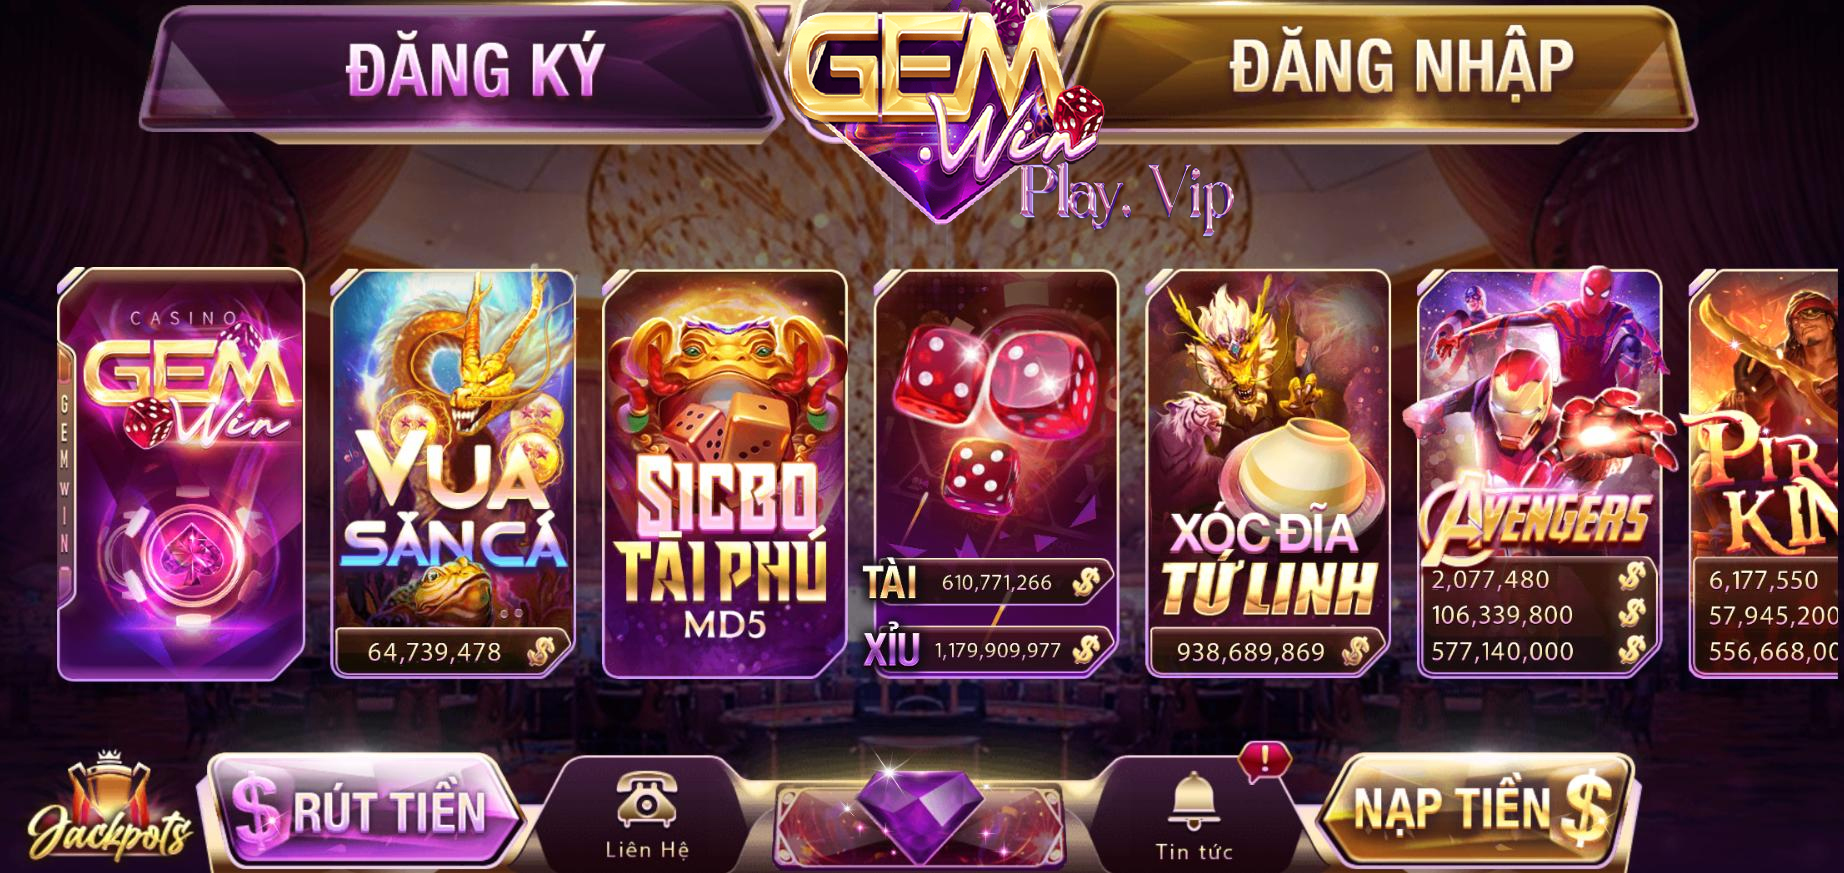 Tại sao nên chơi lô đề trực tuyến tại cổng game Gemwin